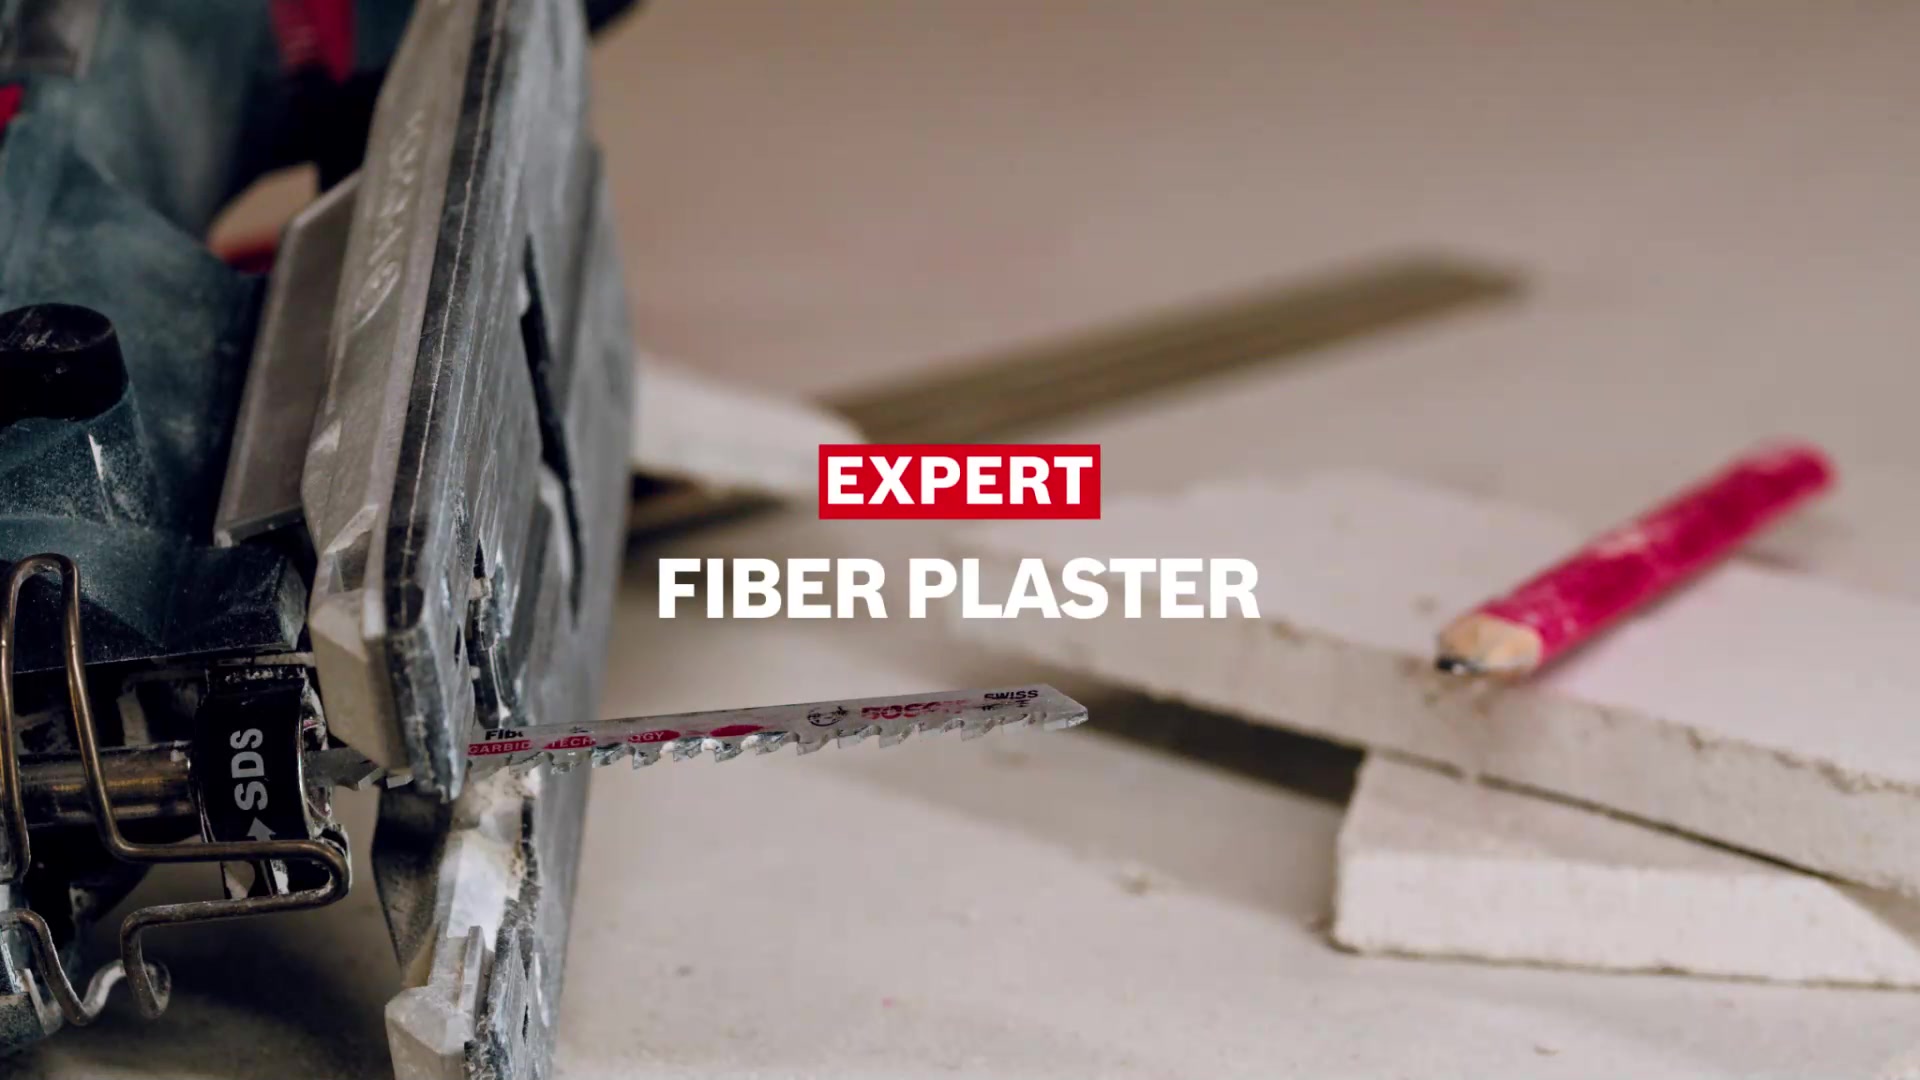 EXPERT Fiber Plaster